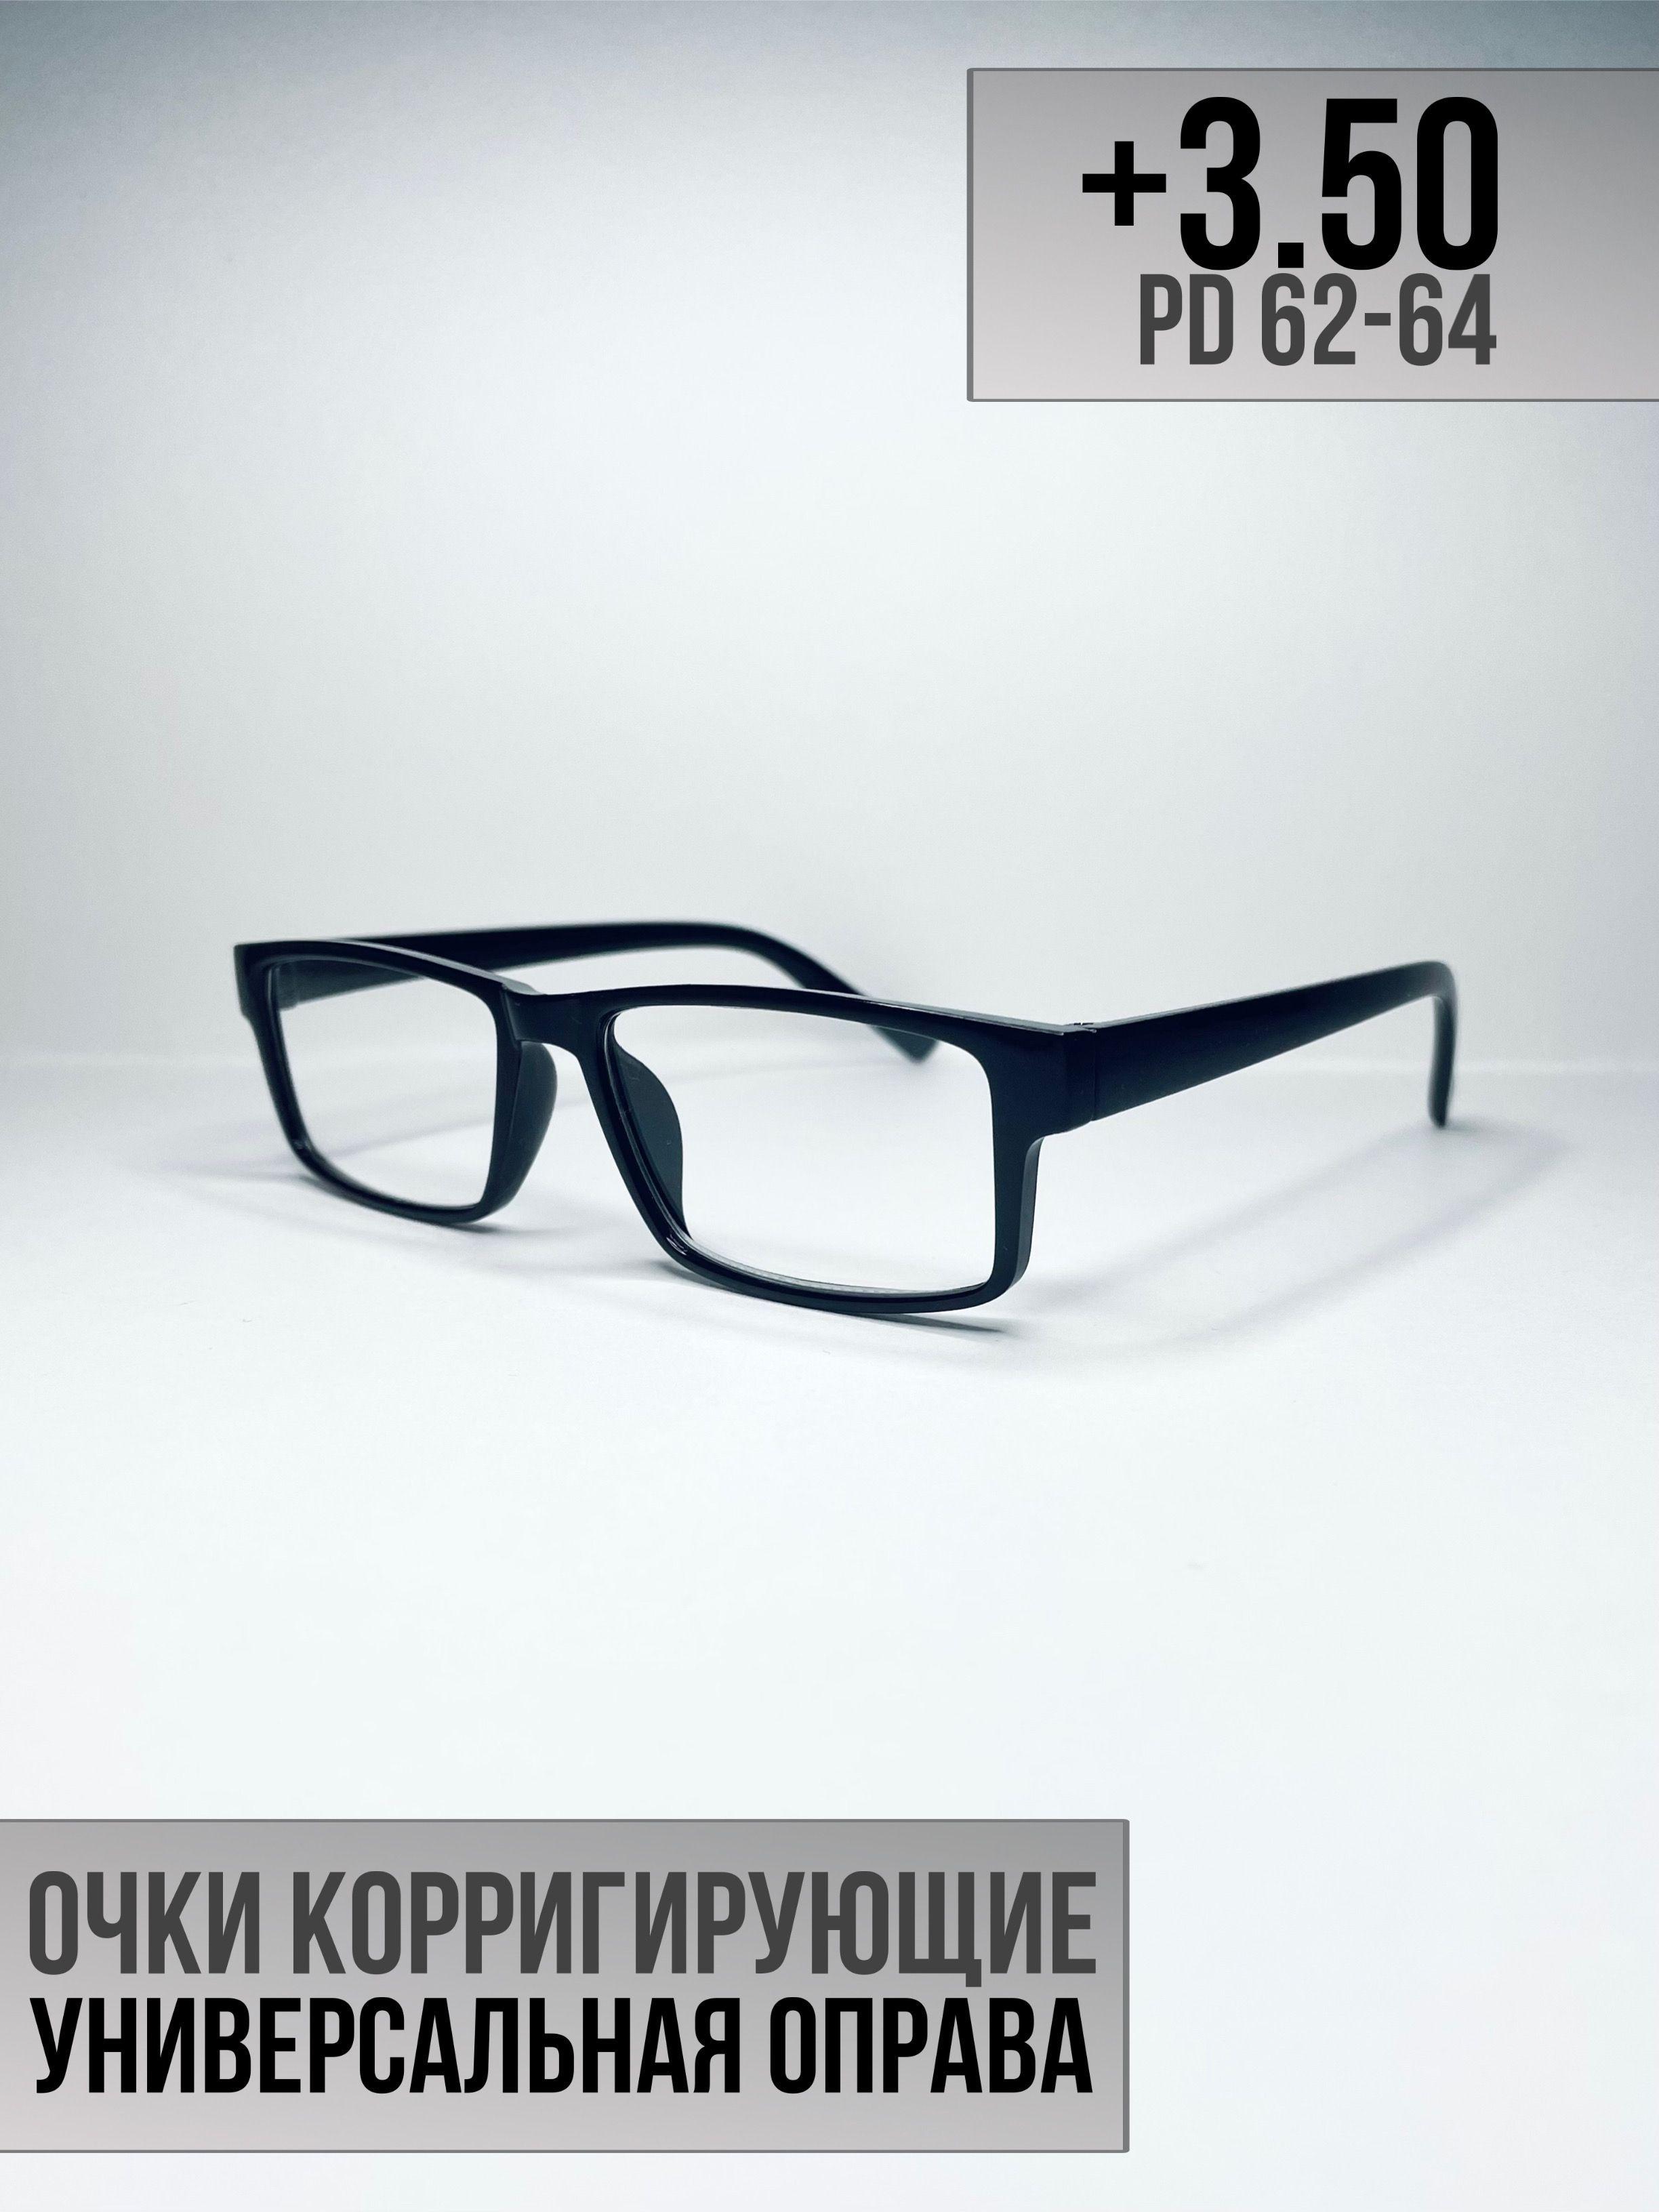 Готовые очки для зрения +3.50 PD62-64. Очки для чтения, корригирующие очки, очки плюс, пластиковые очки, очки для чтения с диоптриями, очки для зрения мужские, очки для зрения женские